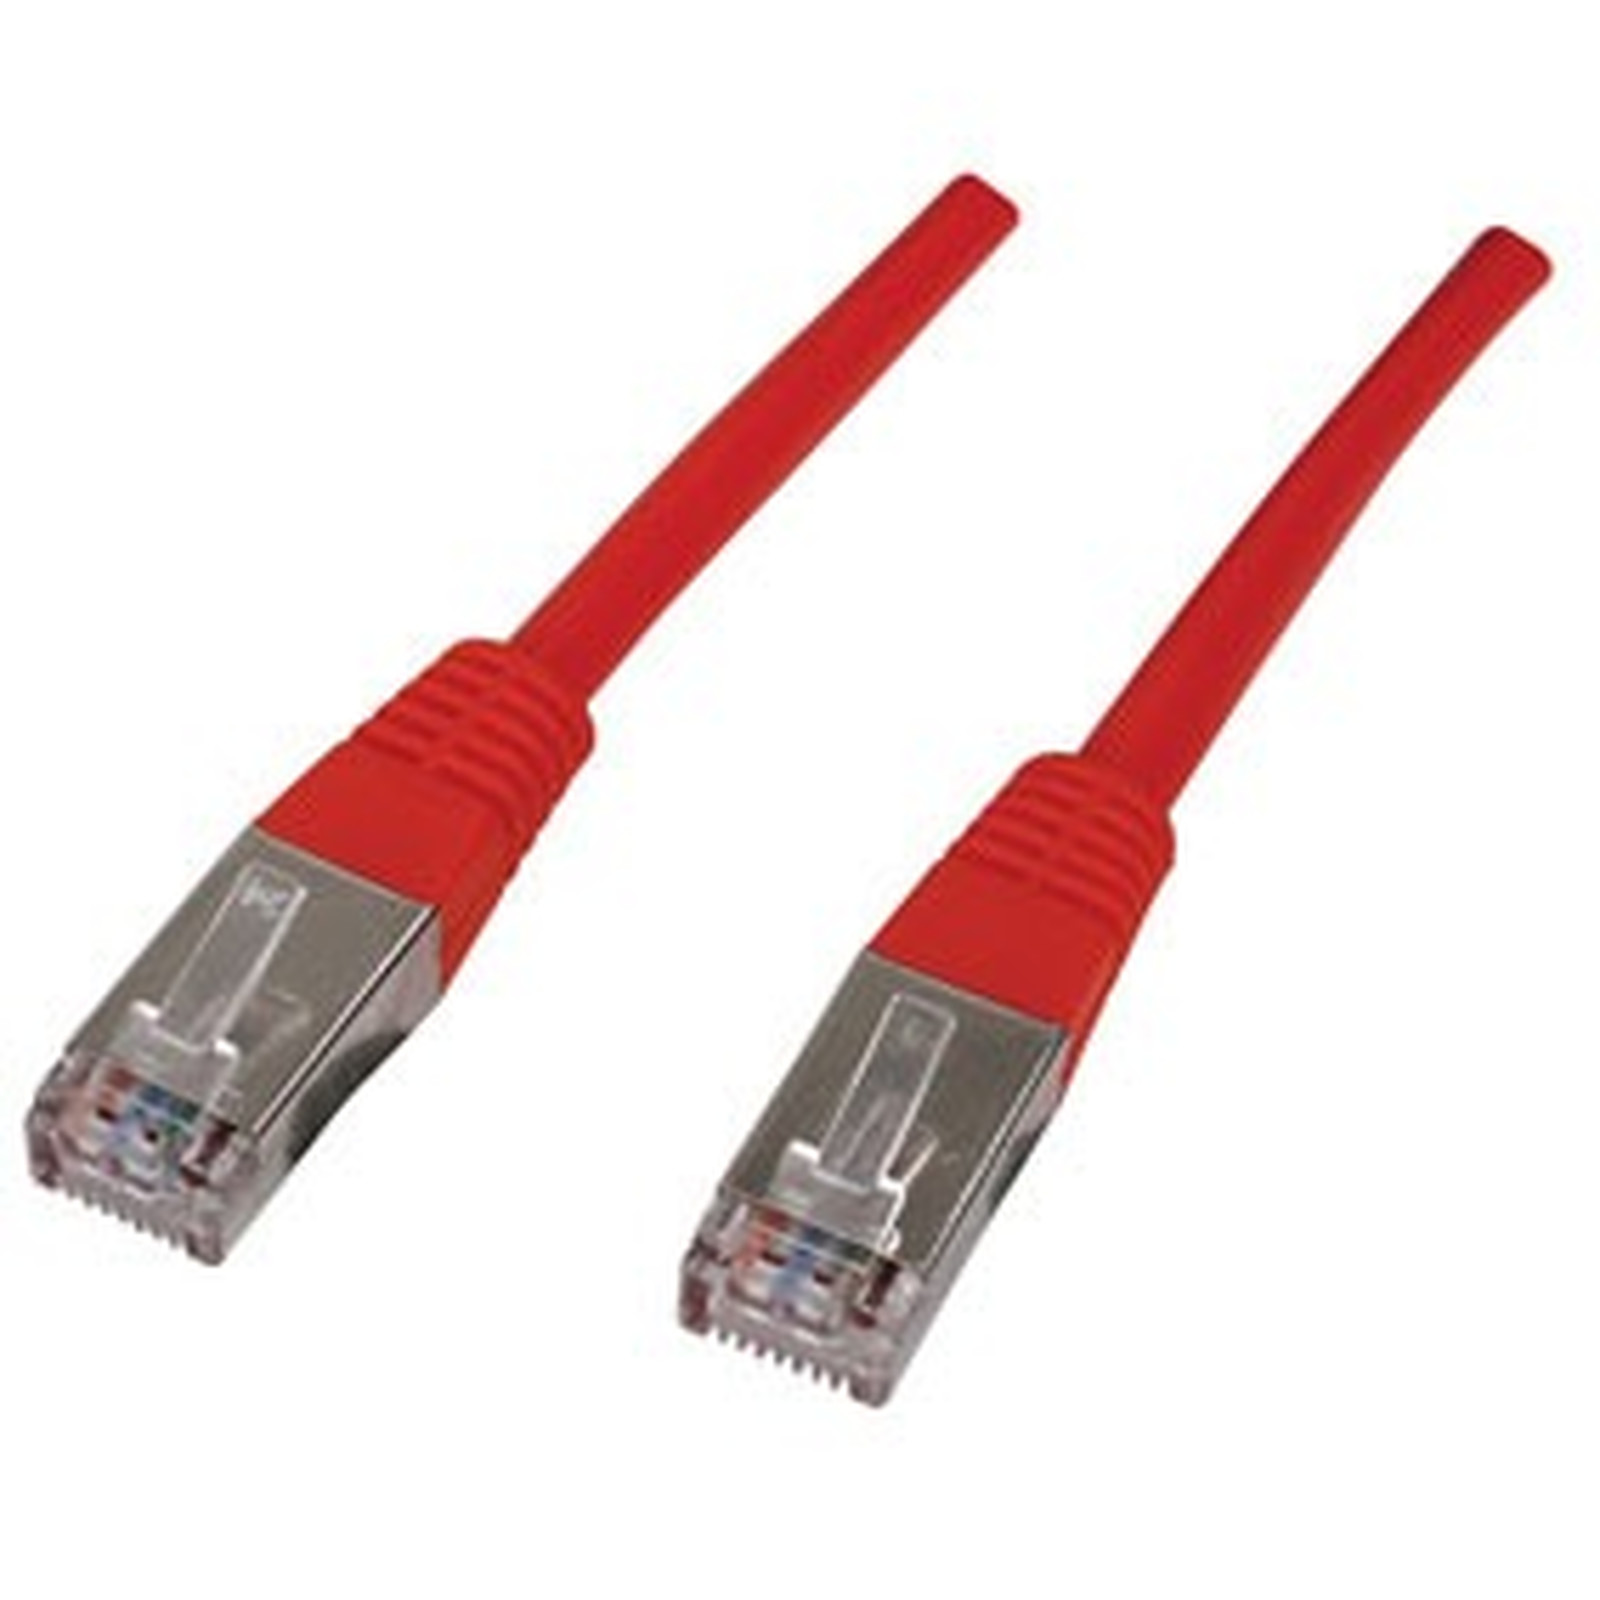 Cable RJ45 categorie 6 F/UTP 3 m (Rouge) - Cable RJ45 Generique